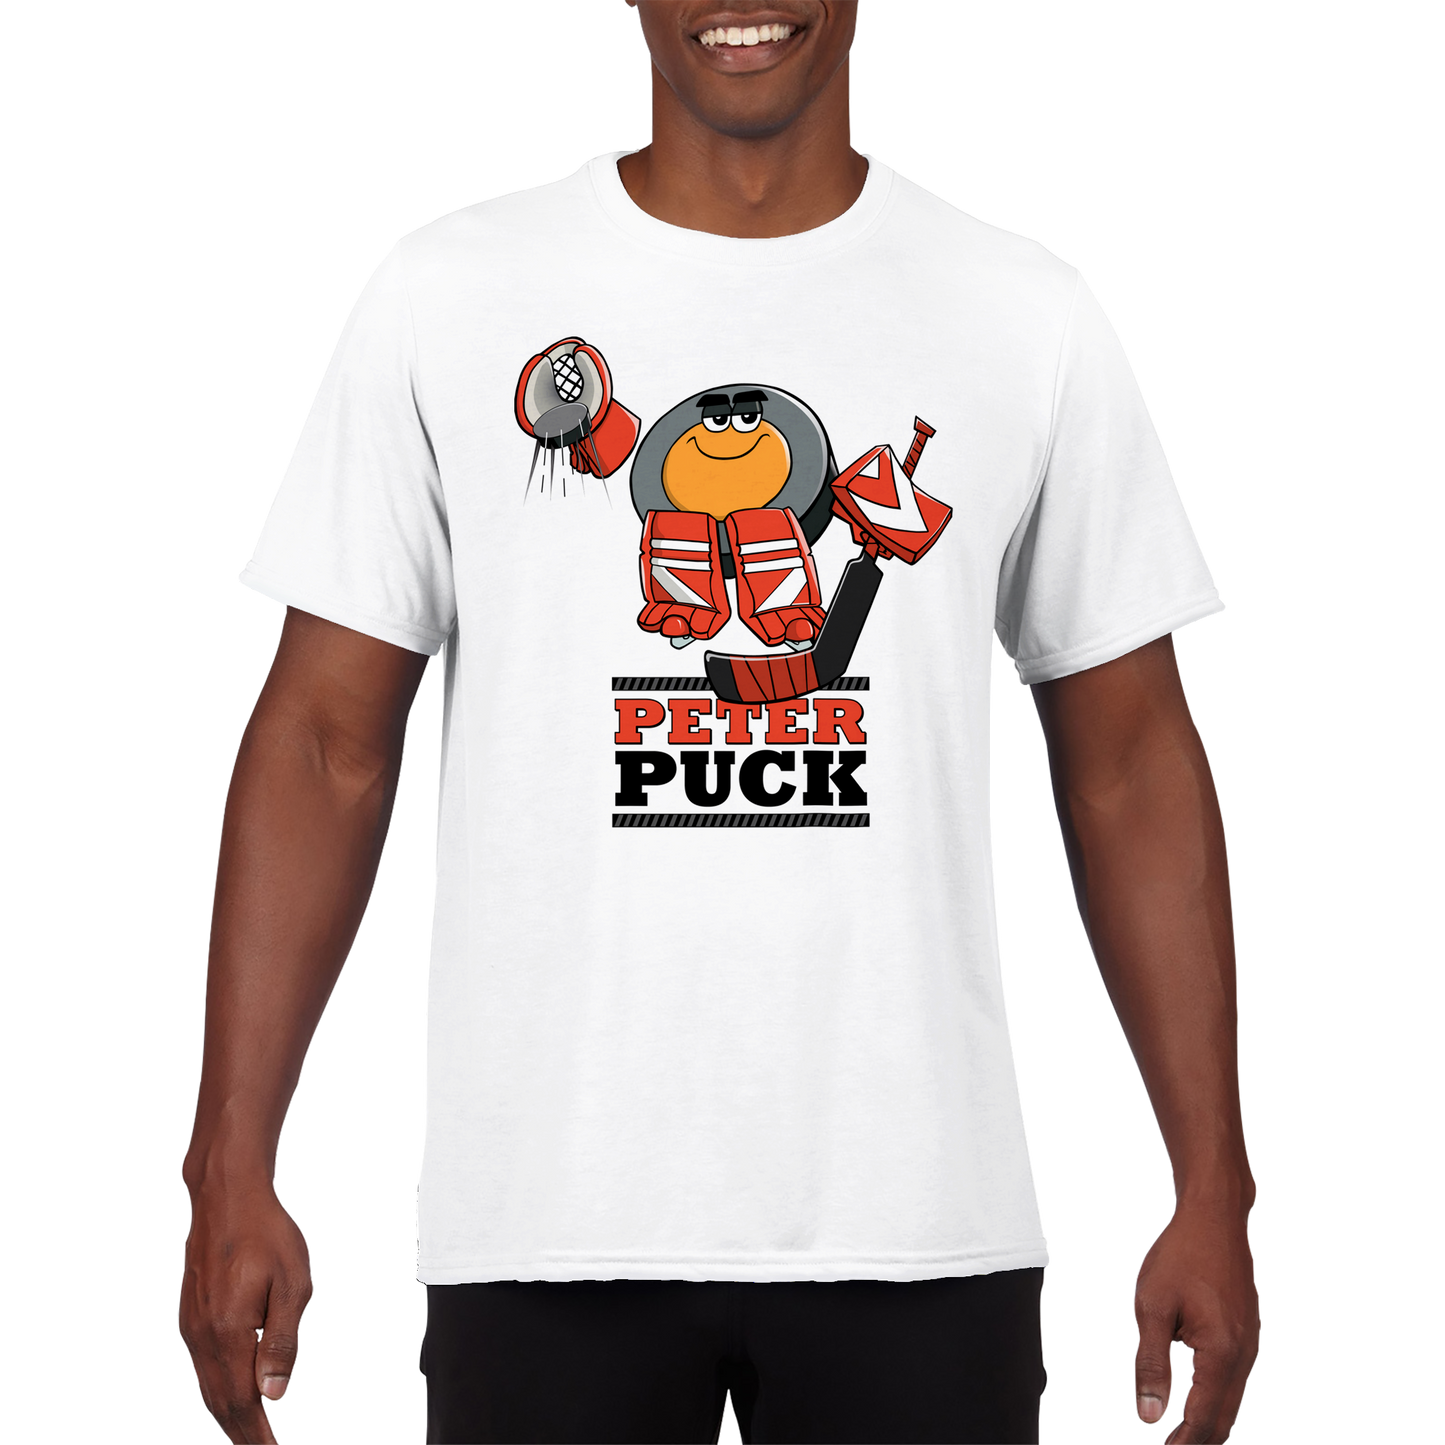 Peter Puck Plays Goalie Mens Performance Crewneck T-shirt